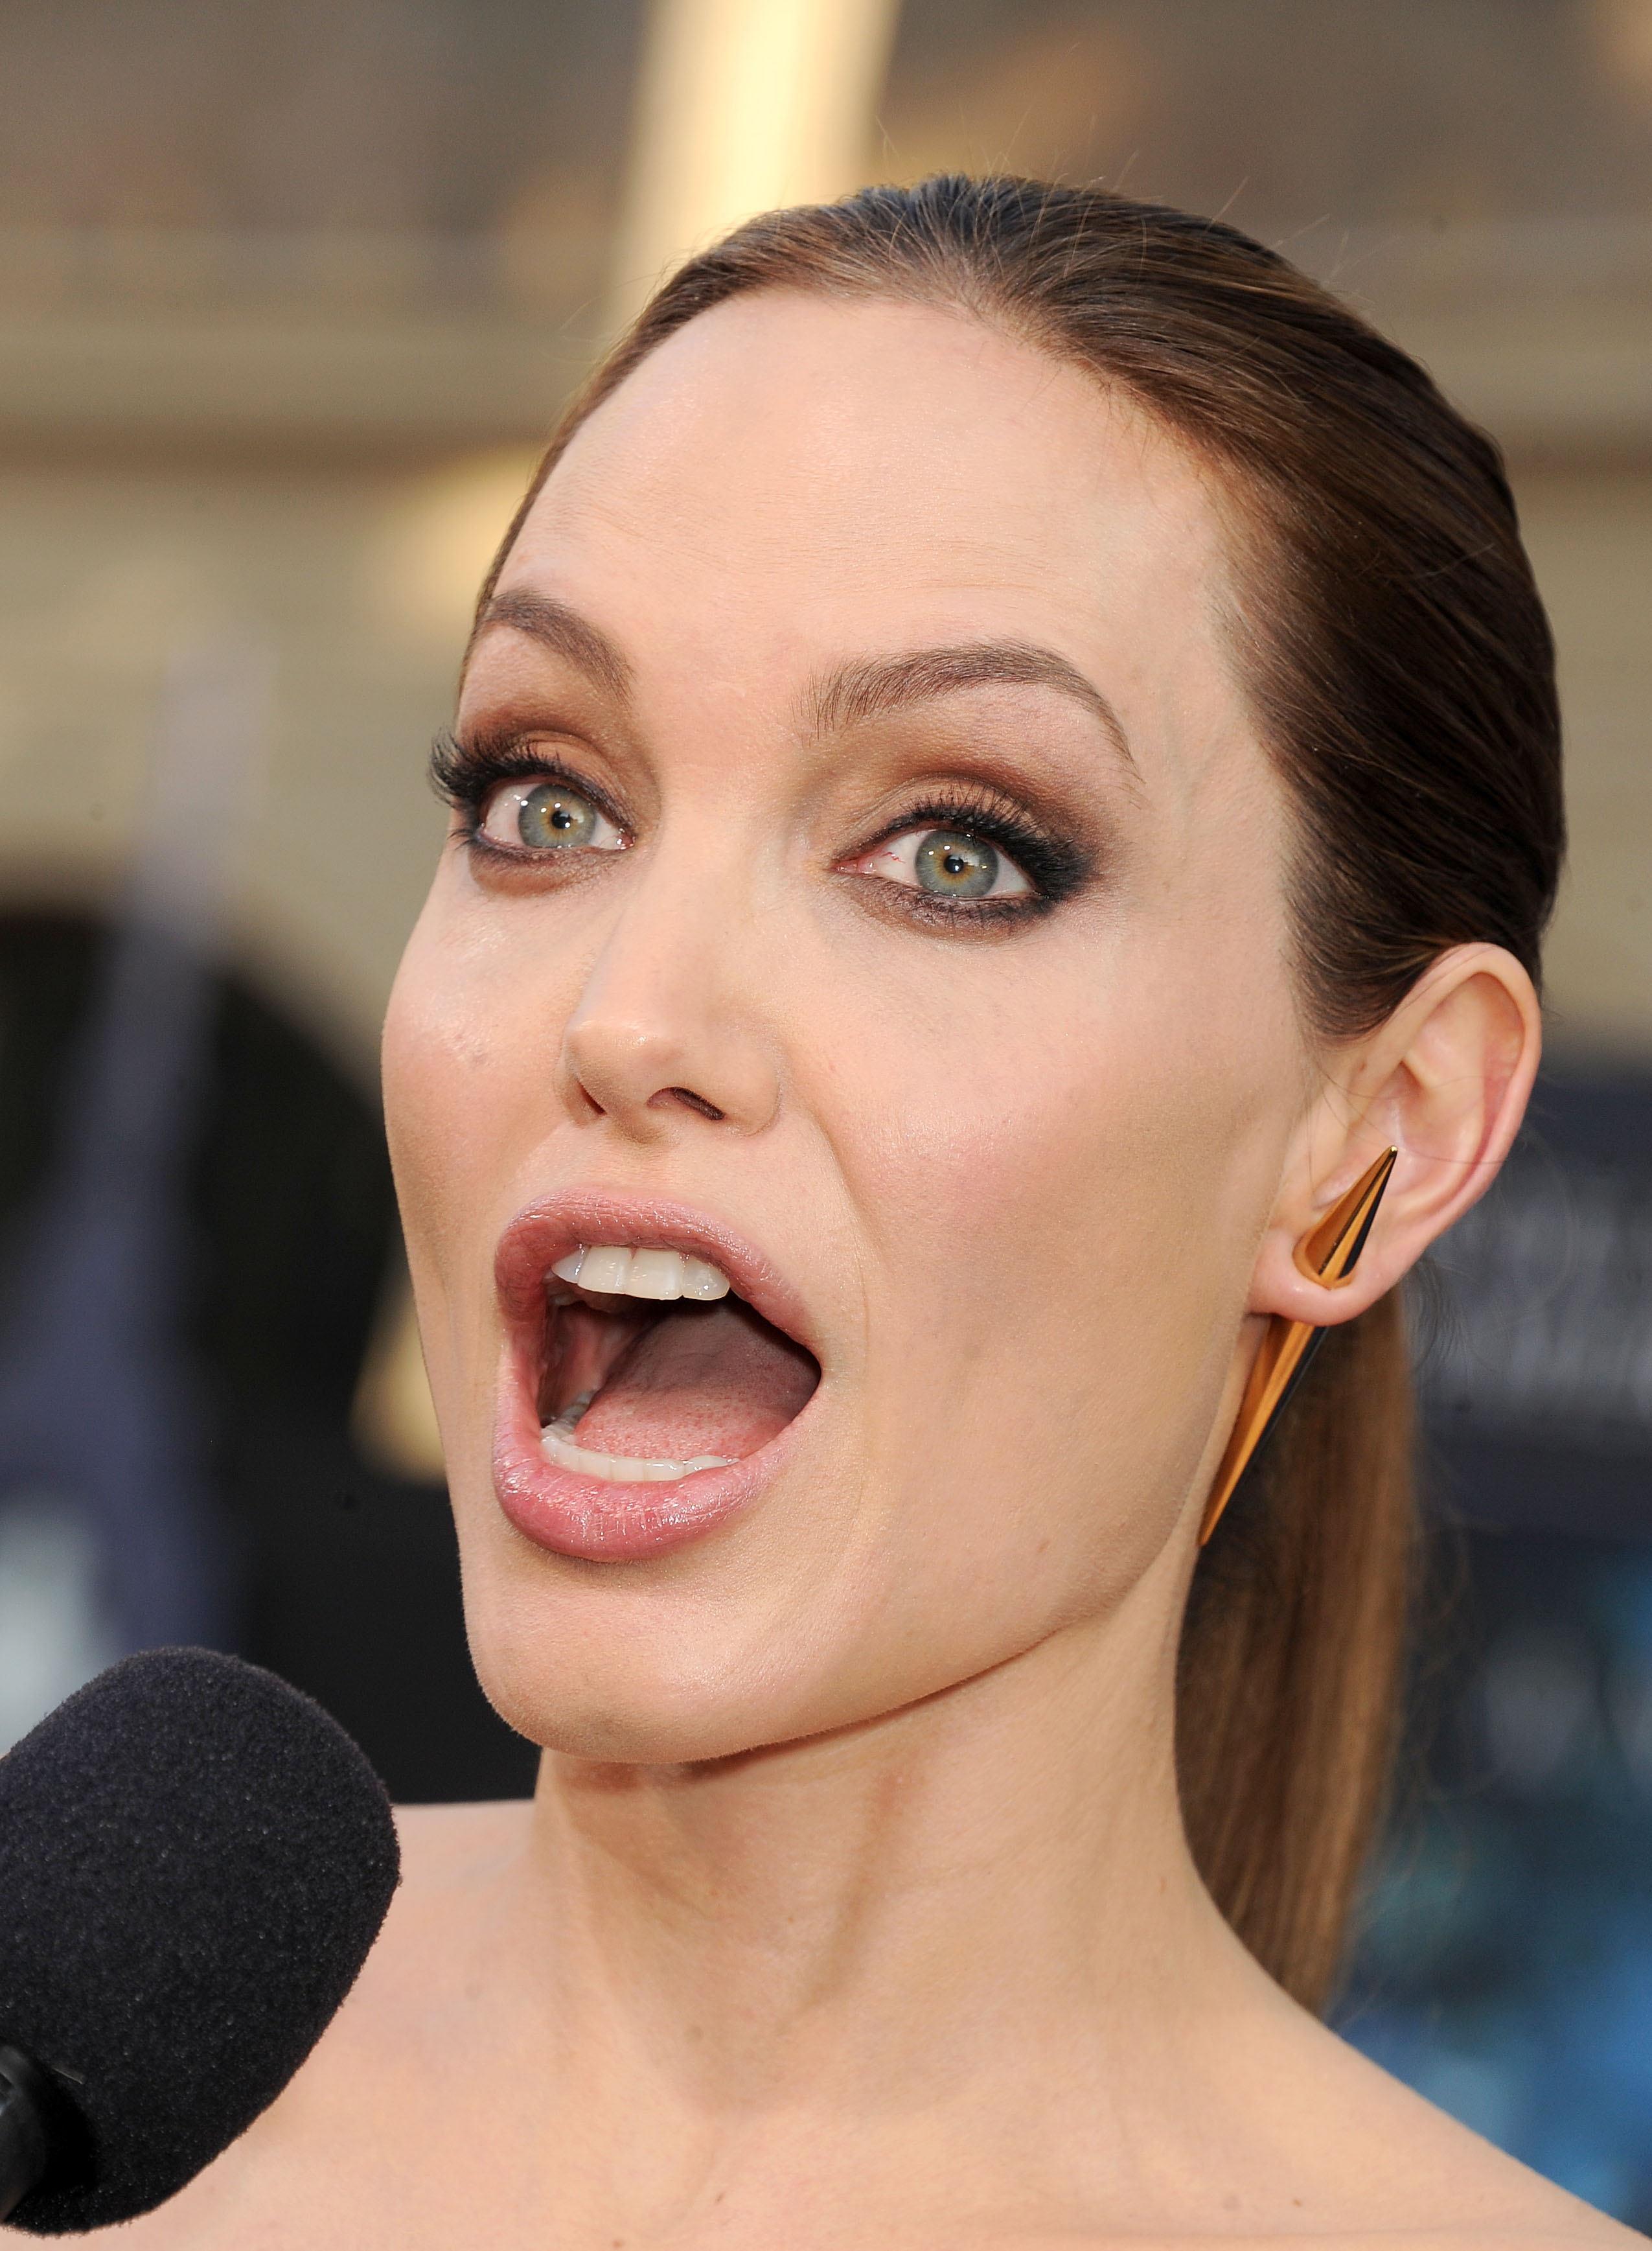 Громадный рот. Анджелина Джоли. Анджелина Джоли фото. Анджелина Джоли открытый рот с языком. Анджелина Джоли tongue.